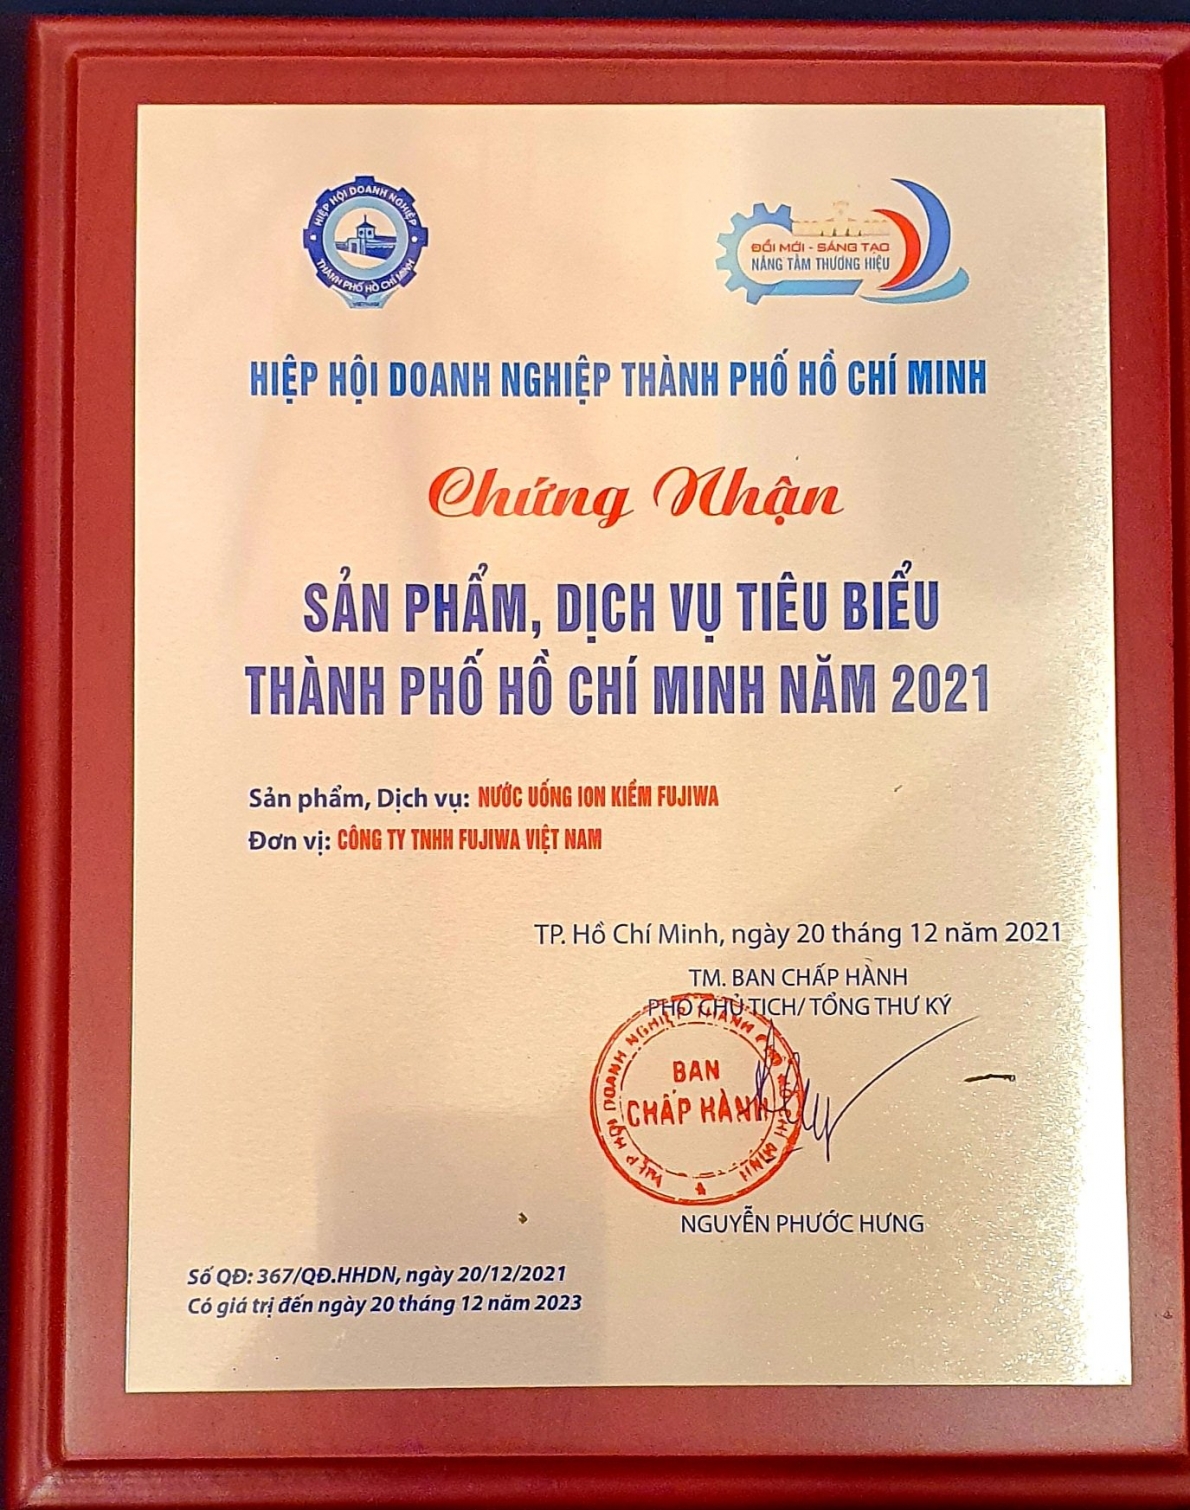 Hiệp Hội doanh nghiệp TP.Hồ Chí Minh: 123 đạt danh hiệu sản phẩm, dịch vụ tiêu biểu năm 2021